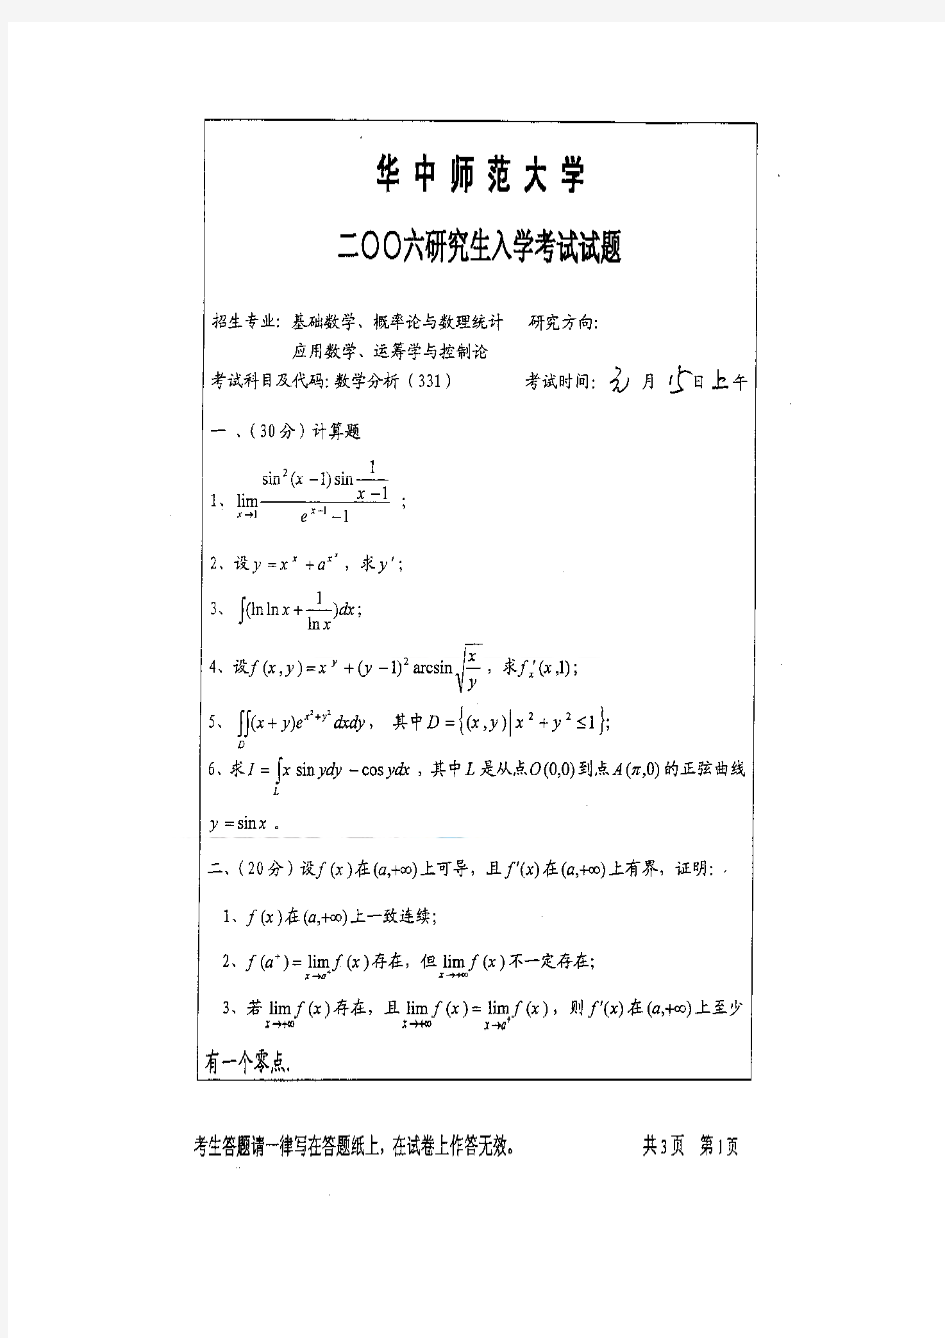 2006年华中师范大学数学分析(331)考研试题